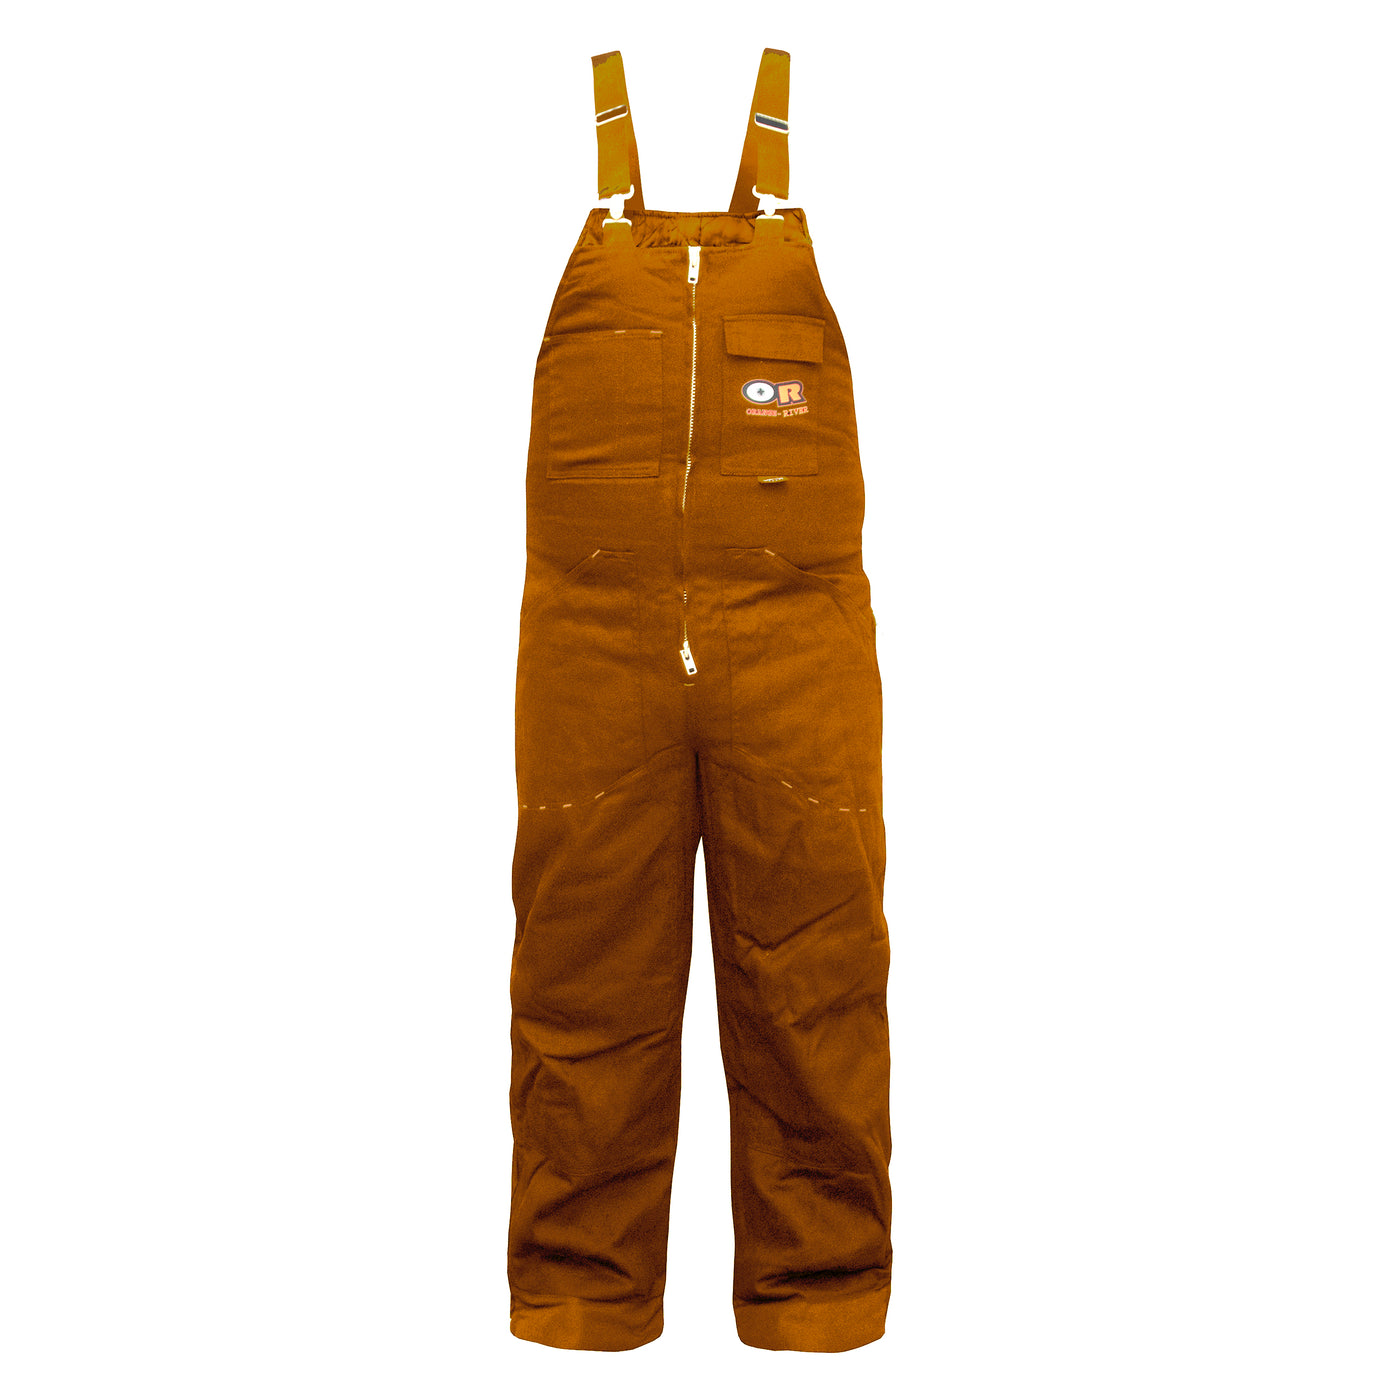 Orange River "Fleece" men's work overalls